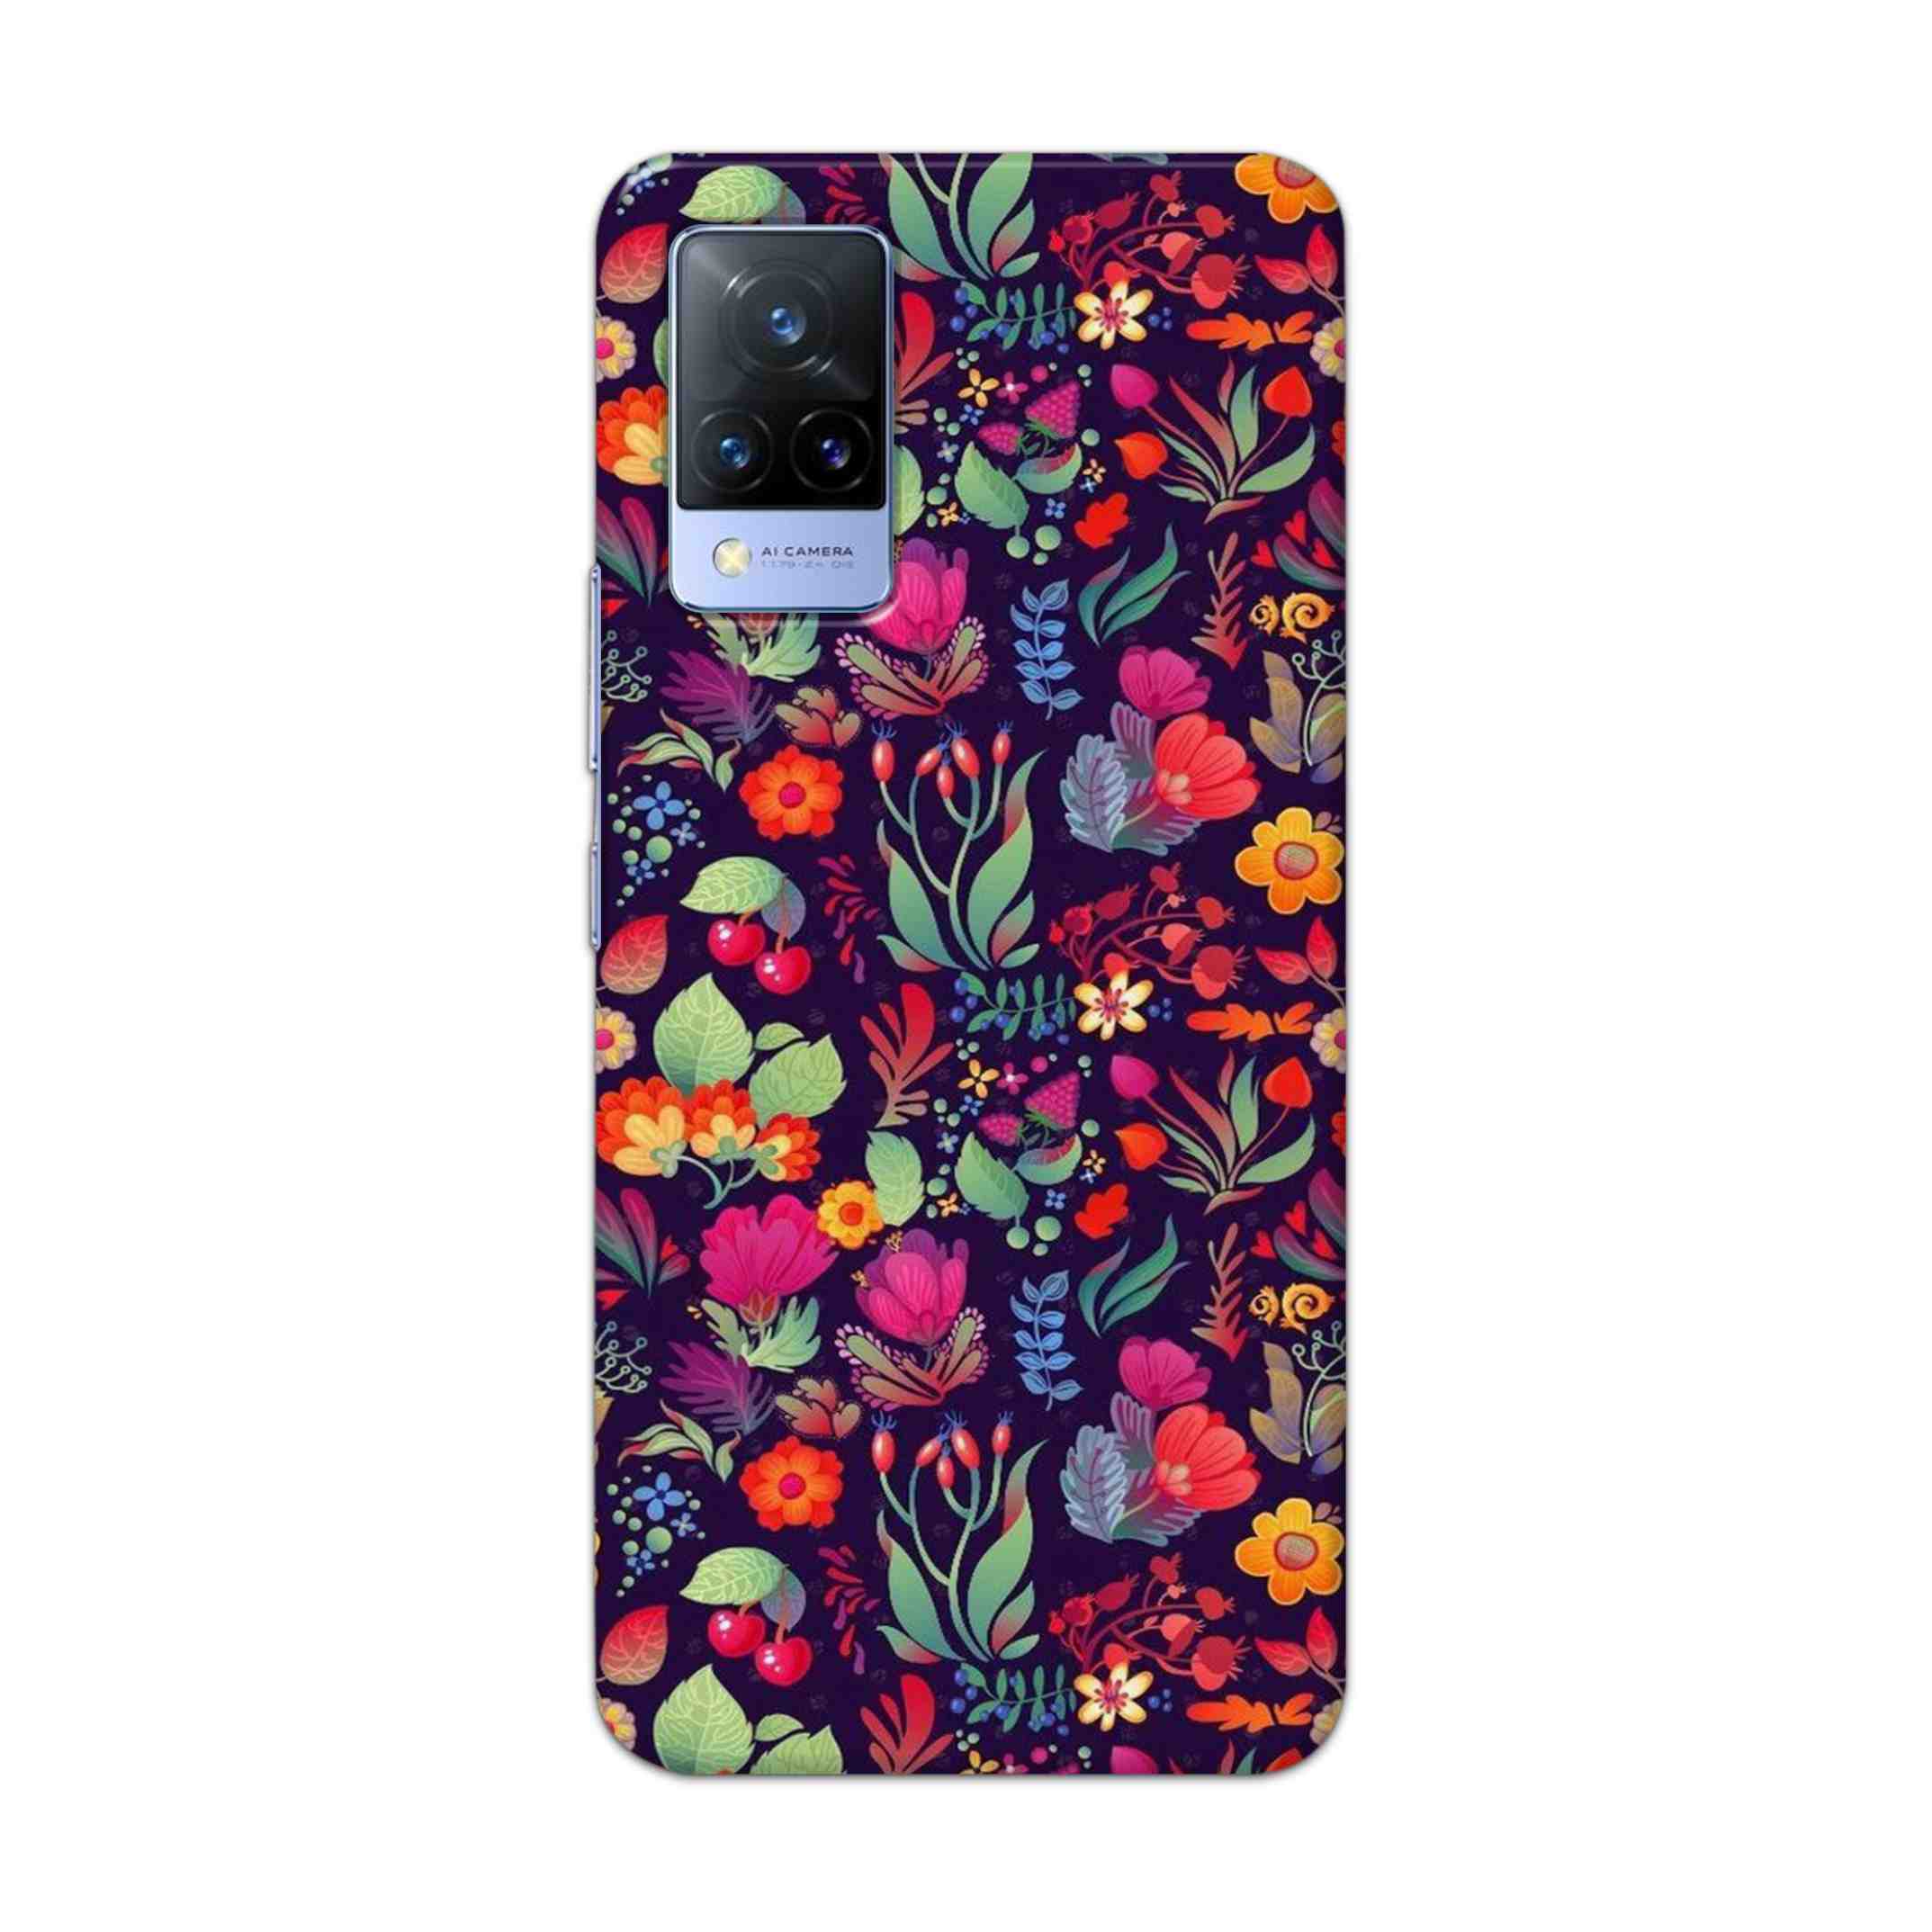 Buy Fruits Flower Hard Back Mobile Phone Case Cover For Vivo V21 Online